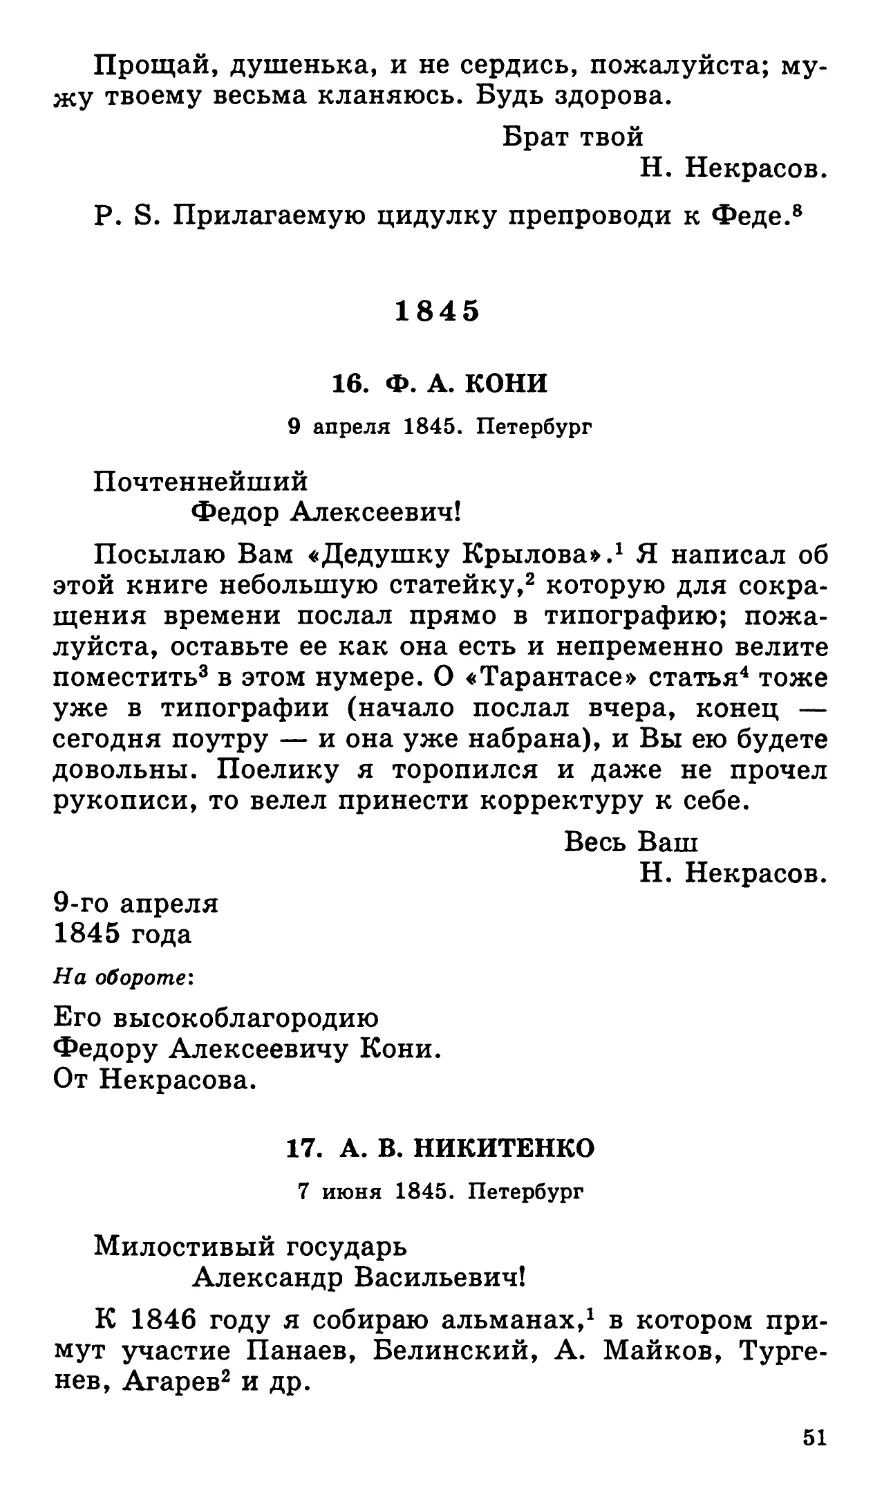 1845
17. А. В. Никитенко. 7 июня